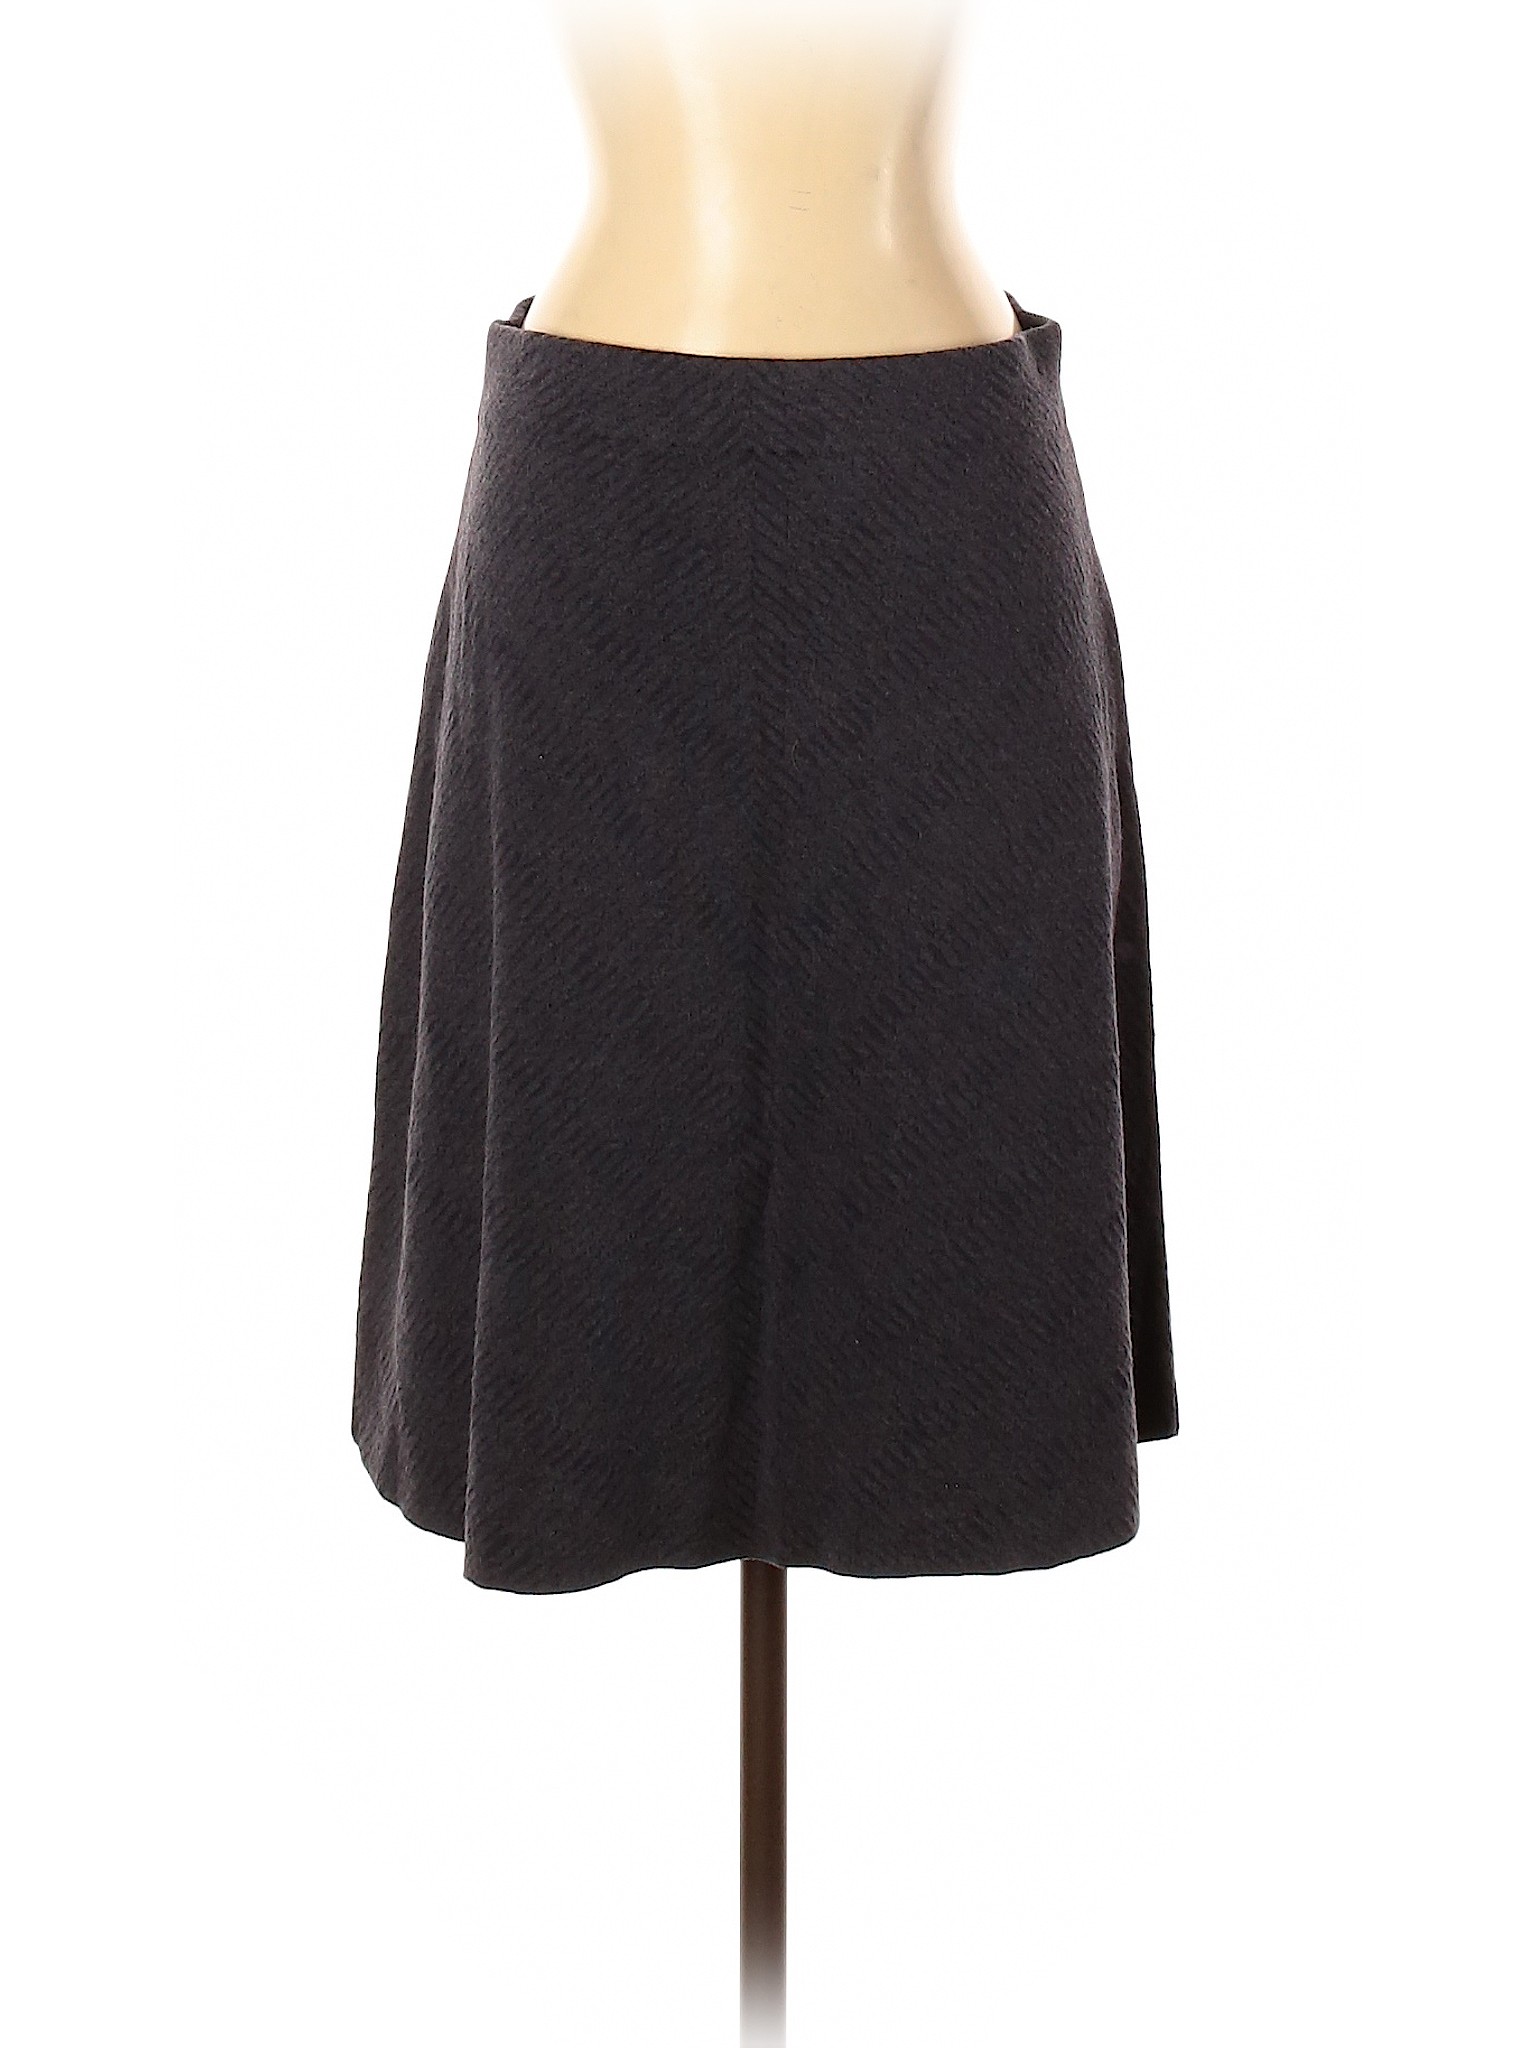 Nic + Zoe Women Gray Casual Skirt S | eBay